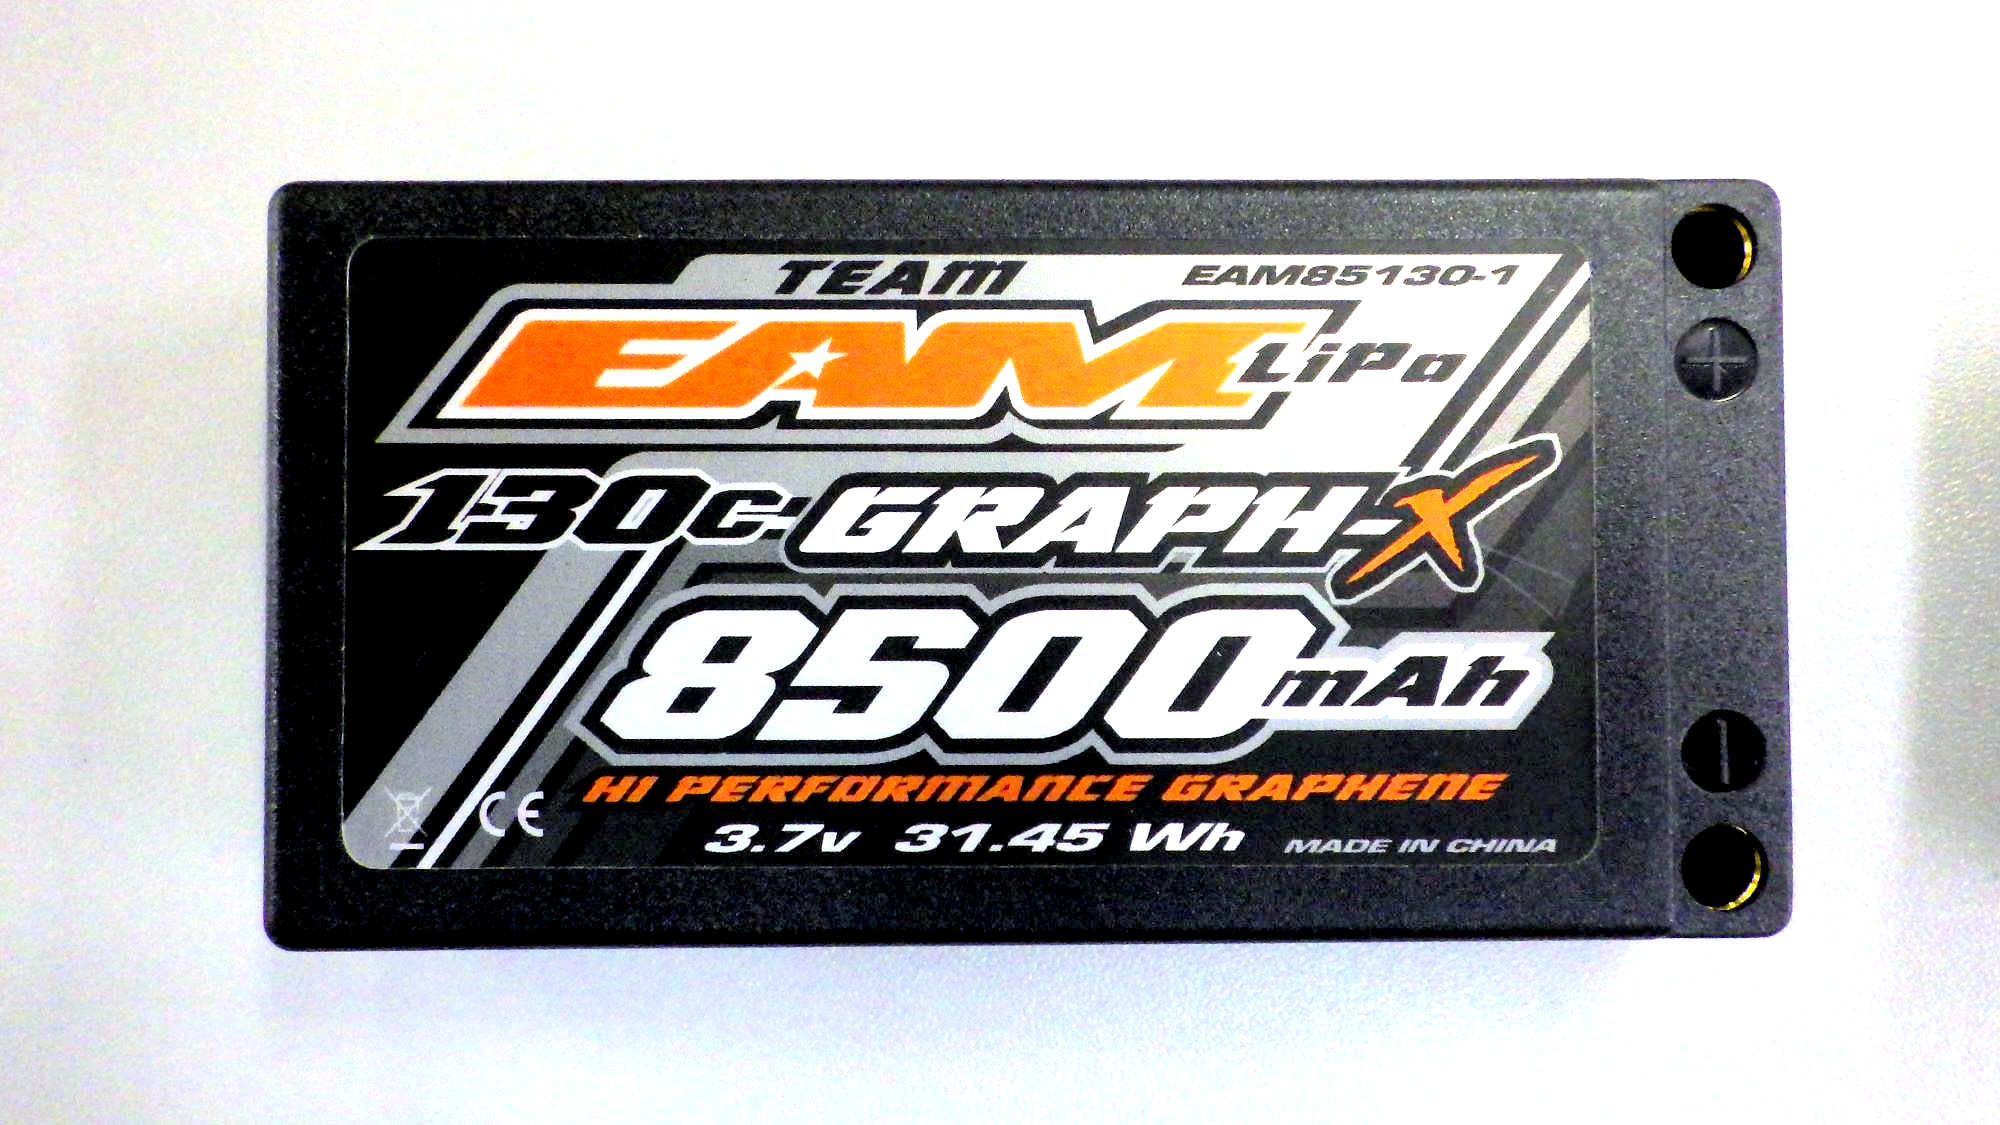 EAM85130-1